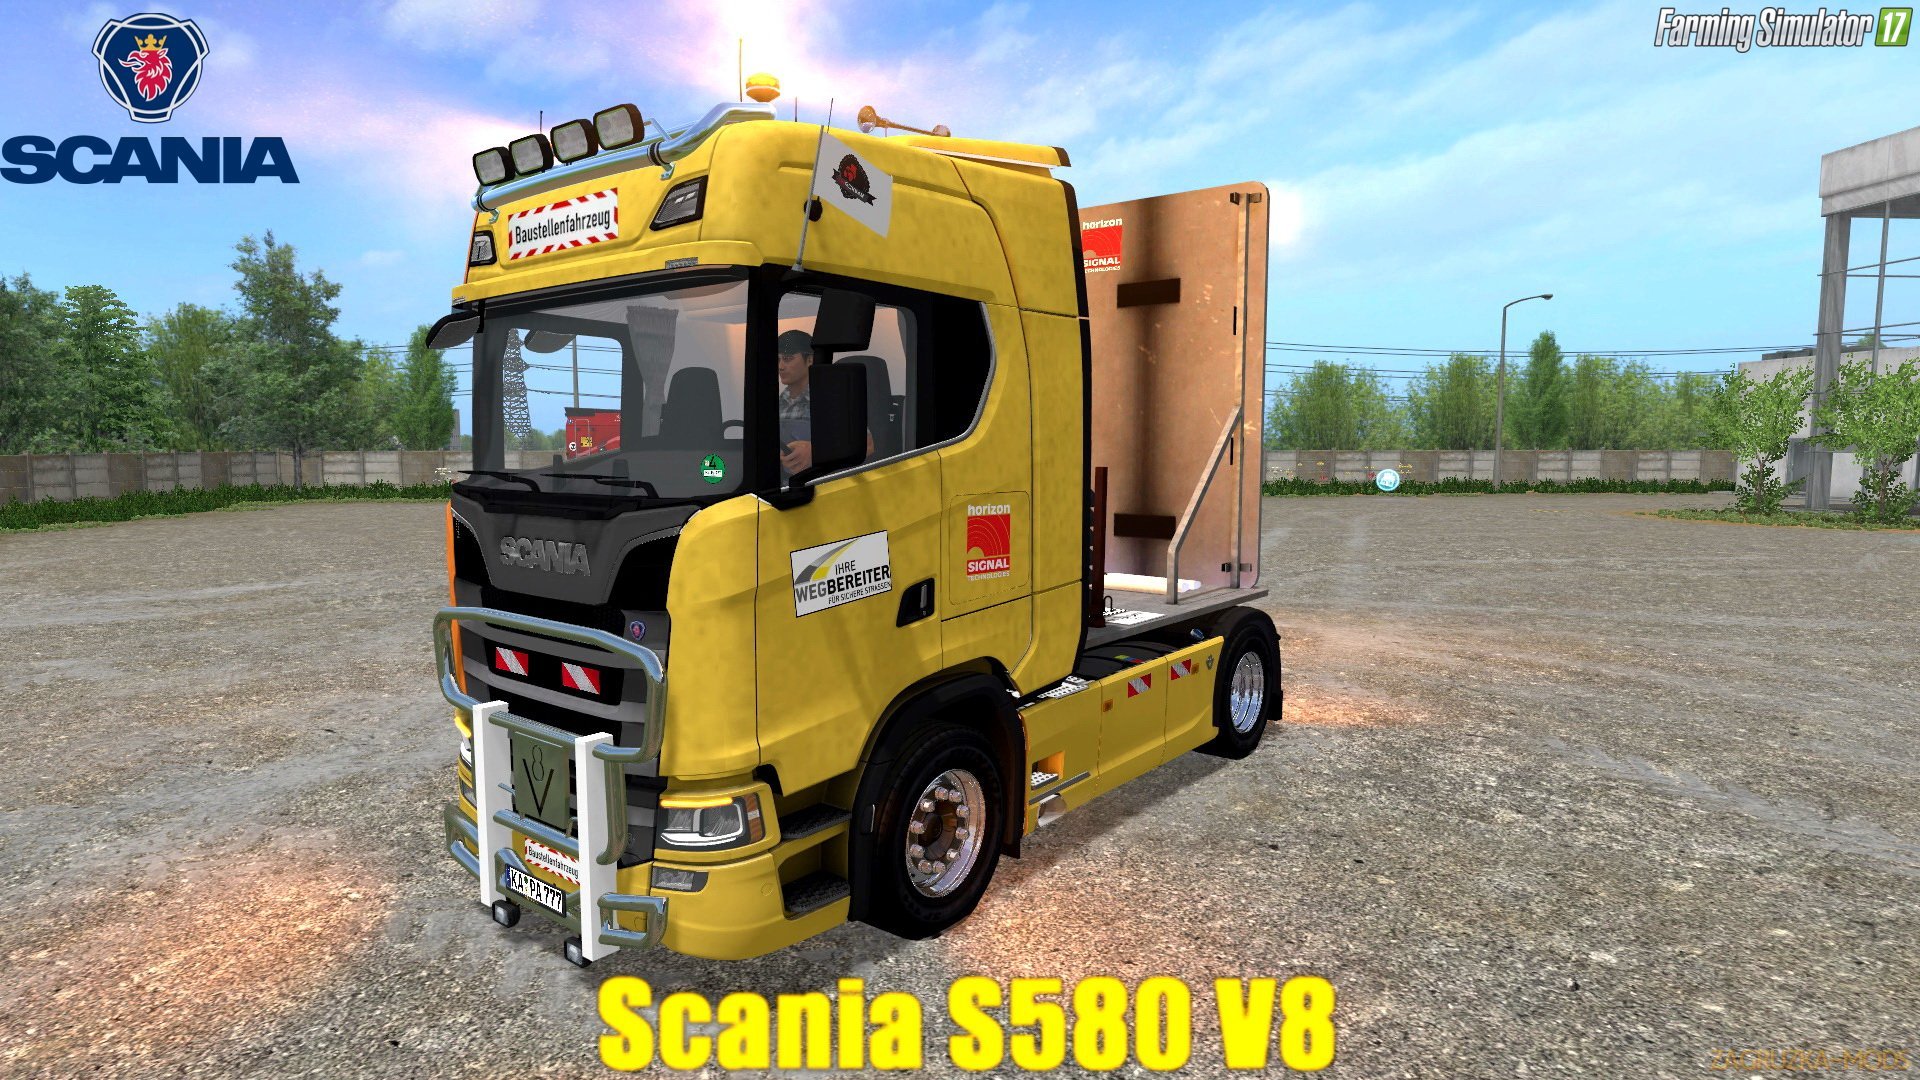 Scania S580 V8 v1.0 for FS 17